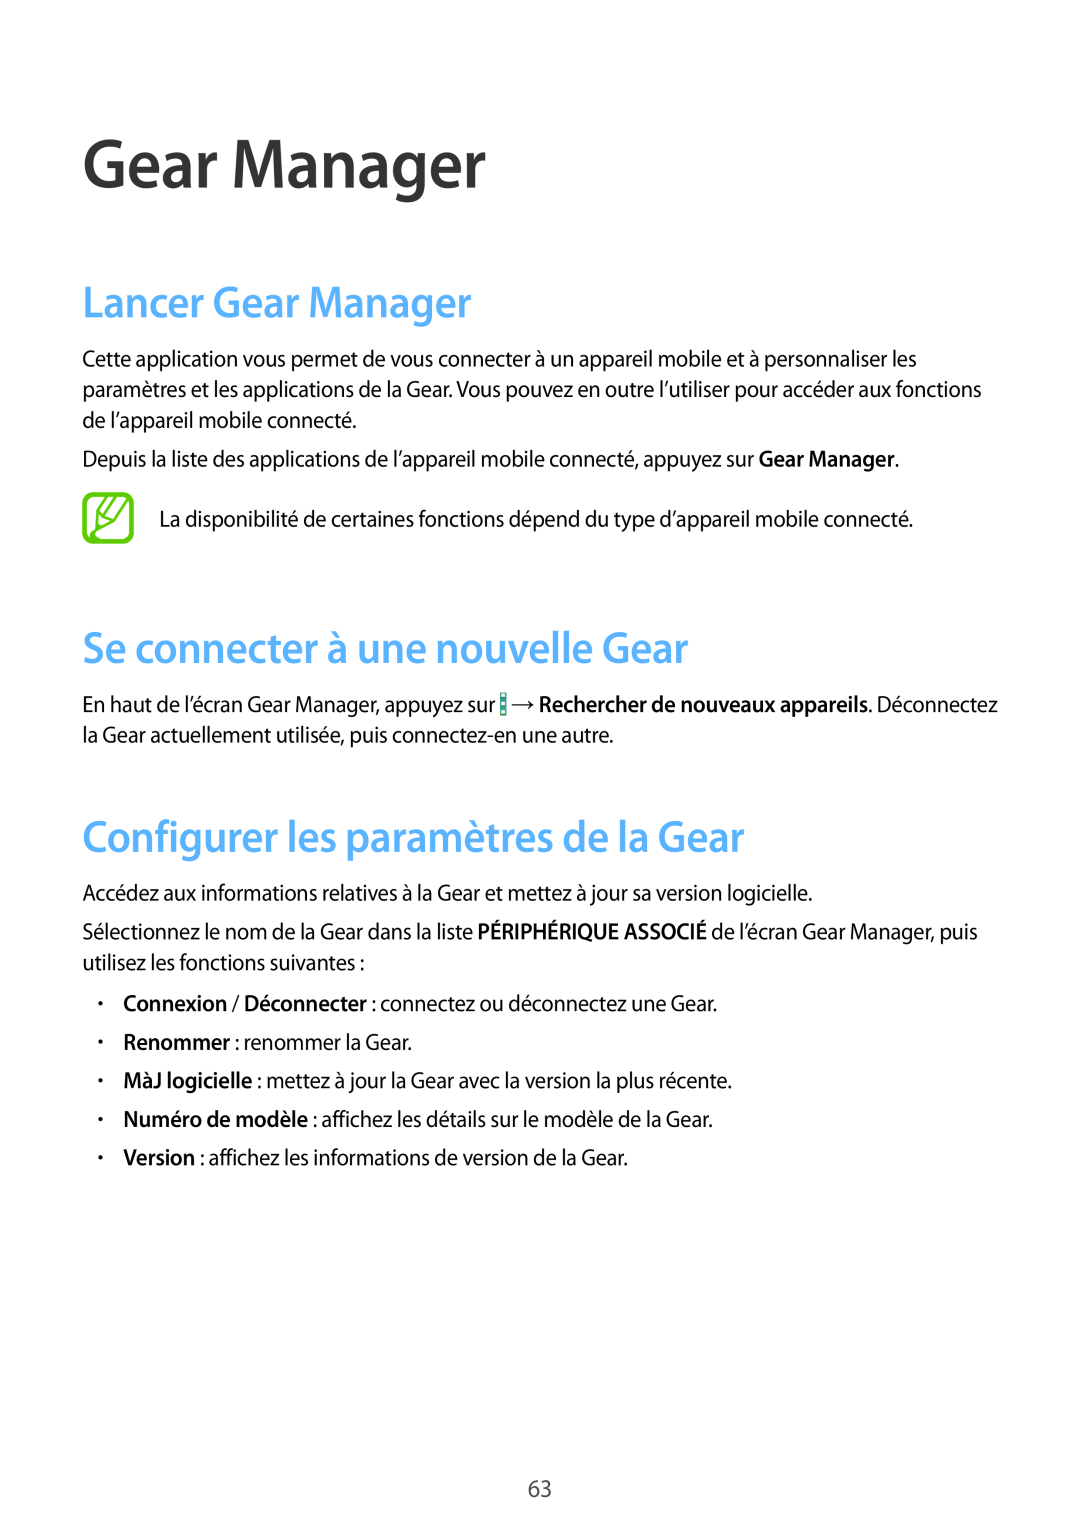 Samsung SM-R3810ZAAXEF Lancer Gear Manager, Se connecter à une nouvelle Gear, Configurer les paramètres de la Gear 